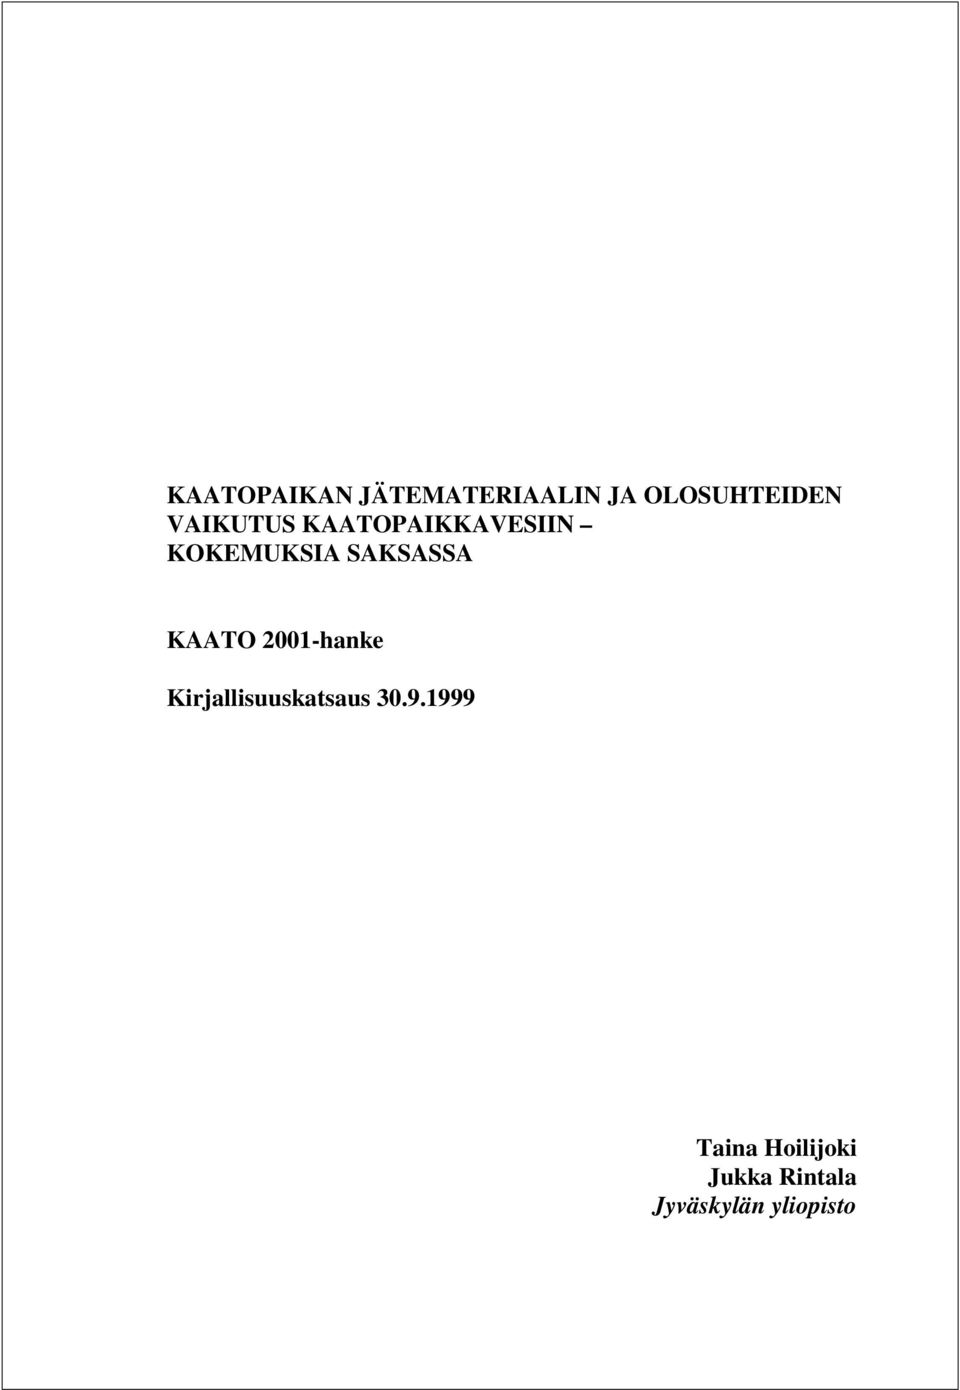 KAATO 2001-hanke Kirjallisuuskatsaus 30.9.